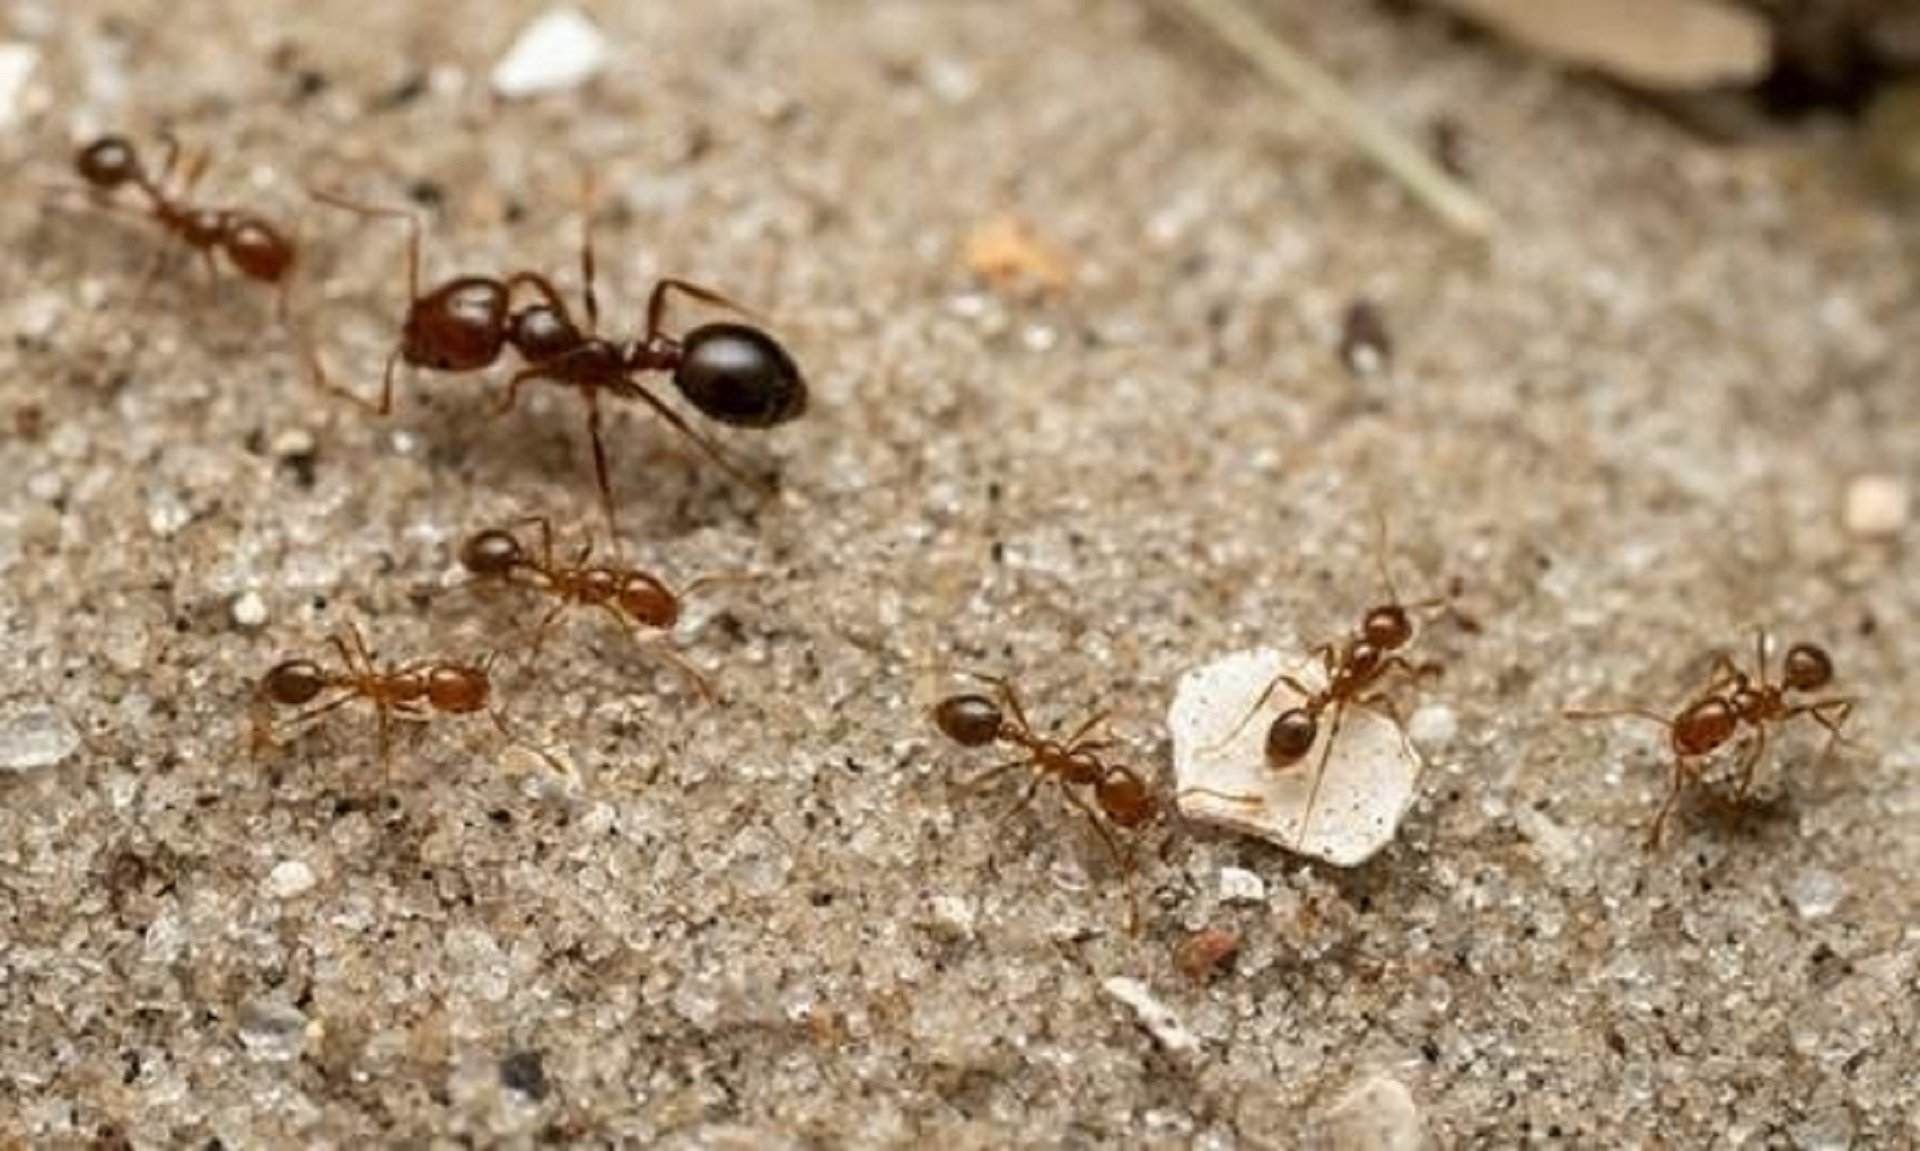 Científics catalans troben formigues vermelles de foc a Europa, i podrien arribar a Espanya